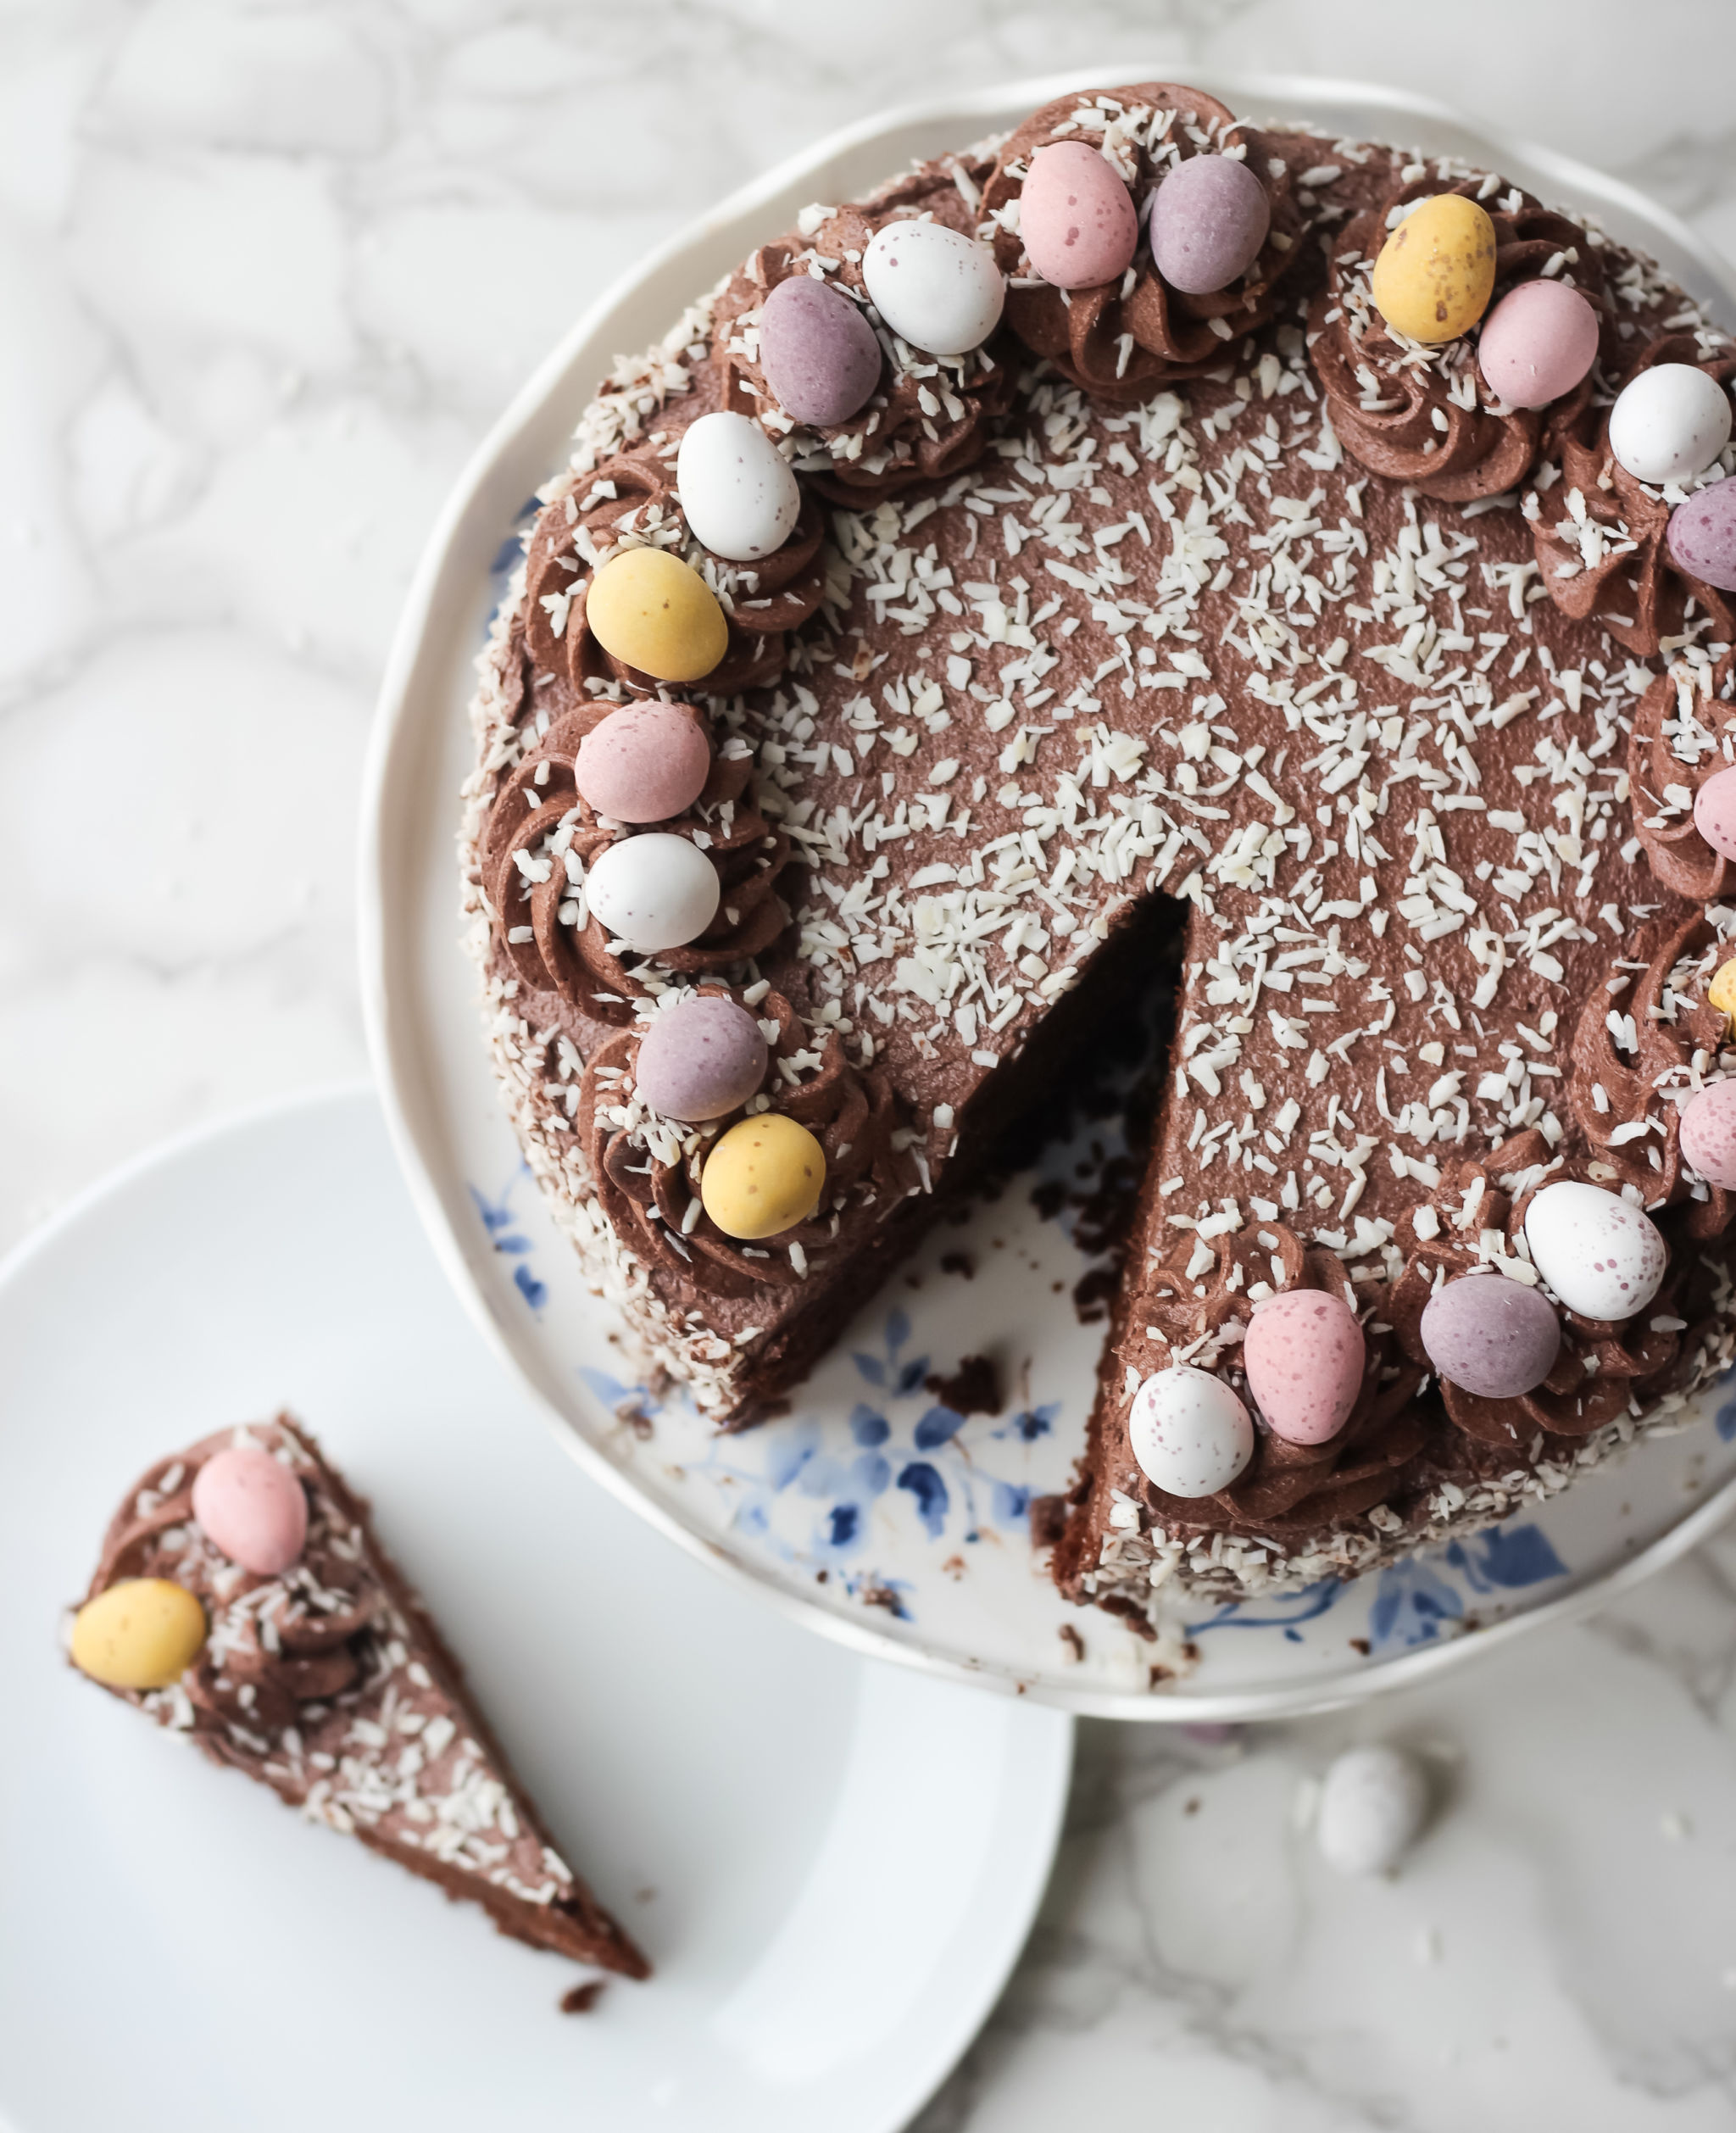 Chocolate Coconut Cake - Baker Jo's Easy, Moist Easter Layer Cake